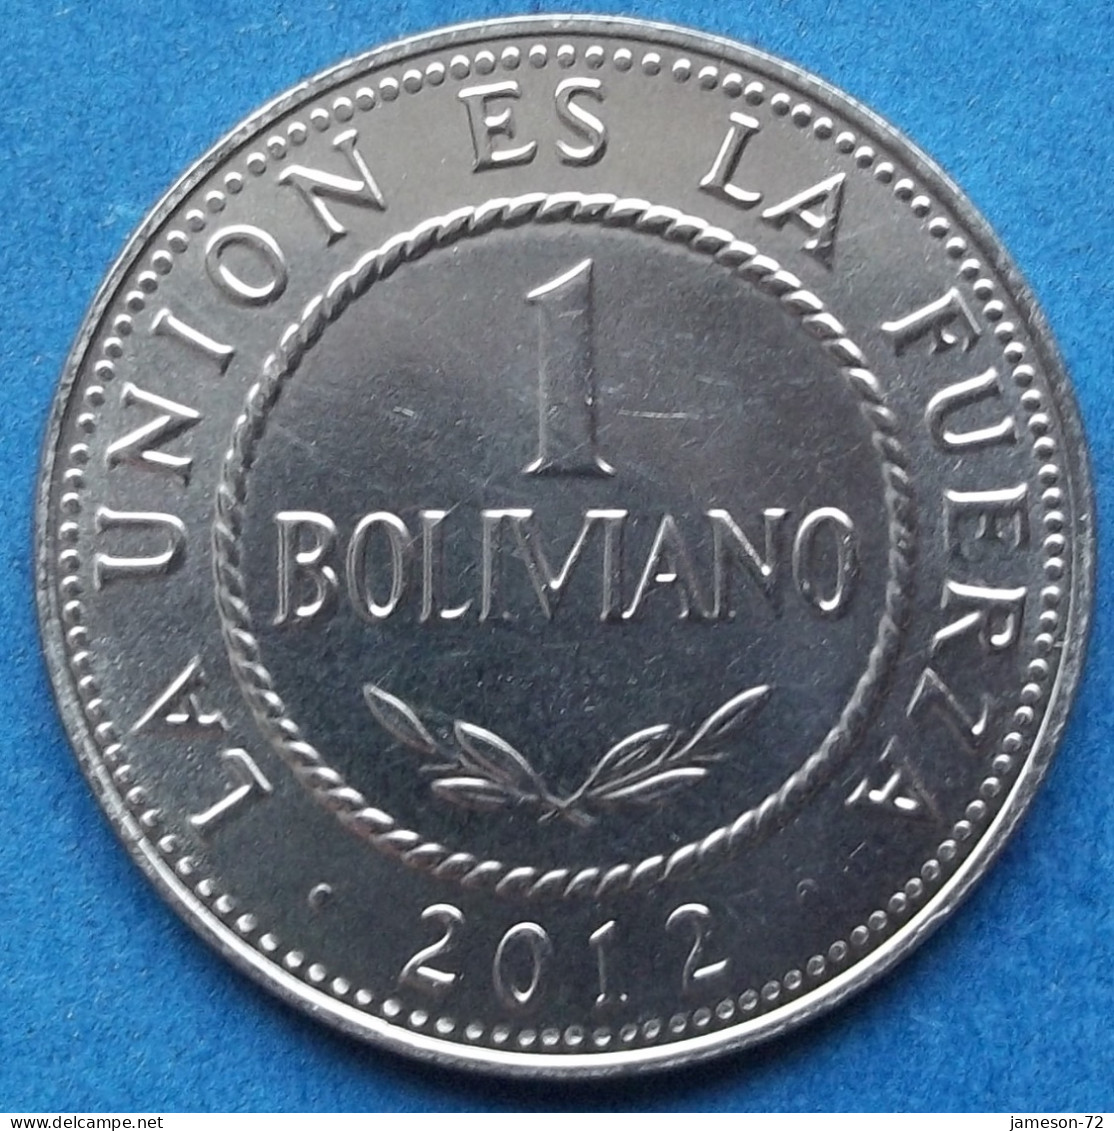 BOLIVIA - 1 Boliviano 2012 KM# 217 Monetary Reform (1987) - Edelweiss Coins - Bolivië